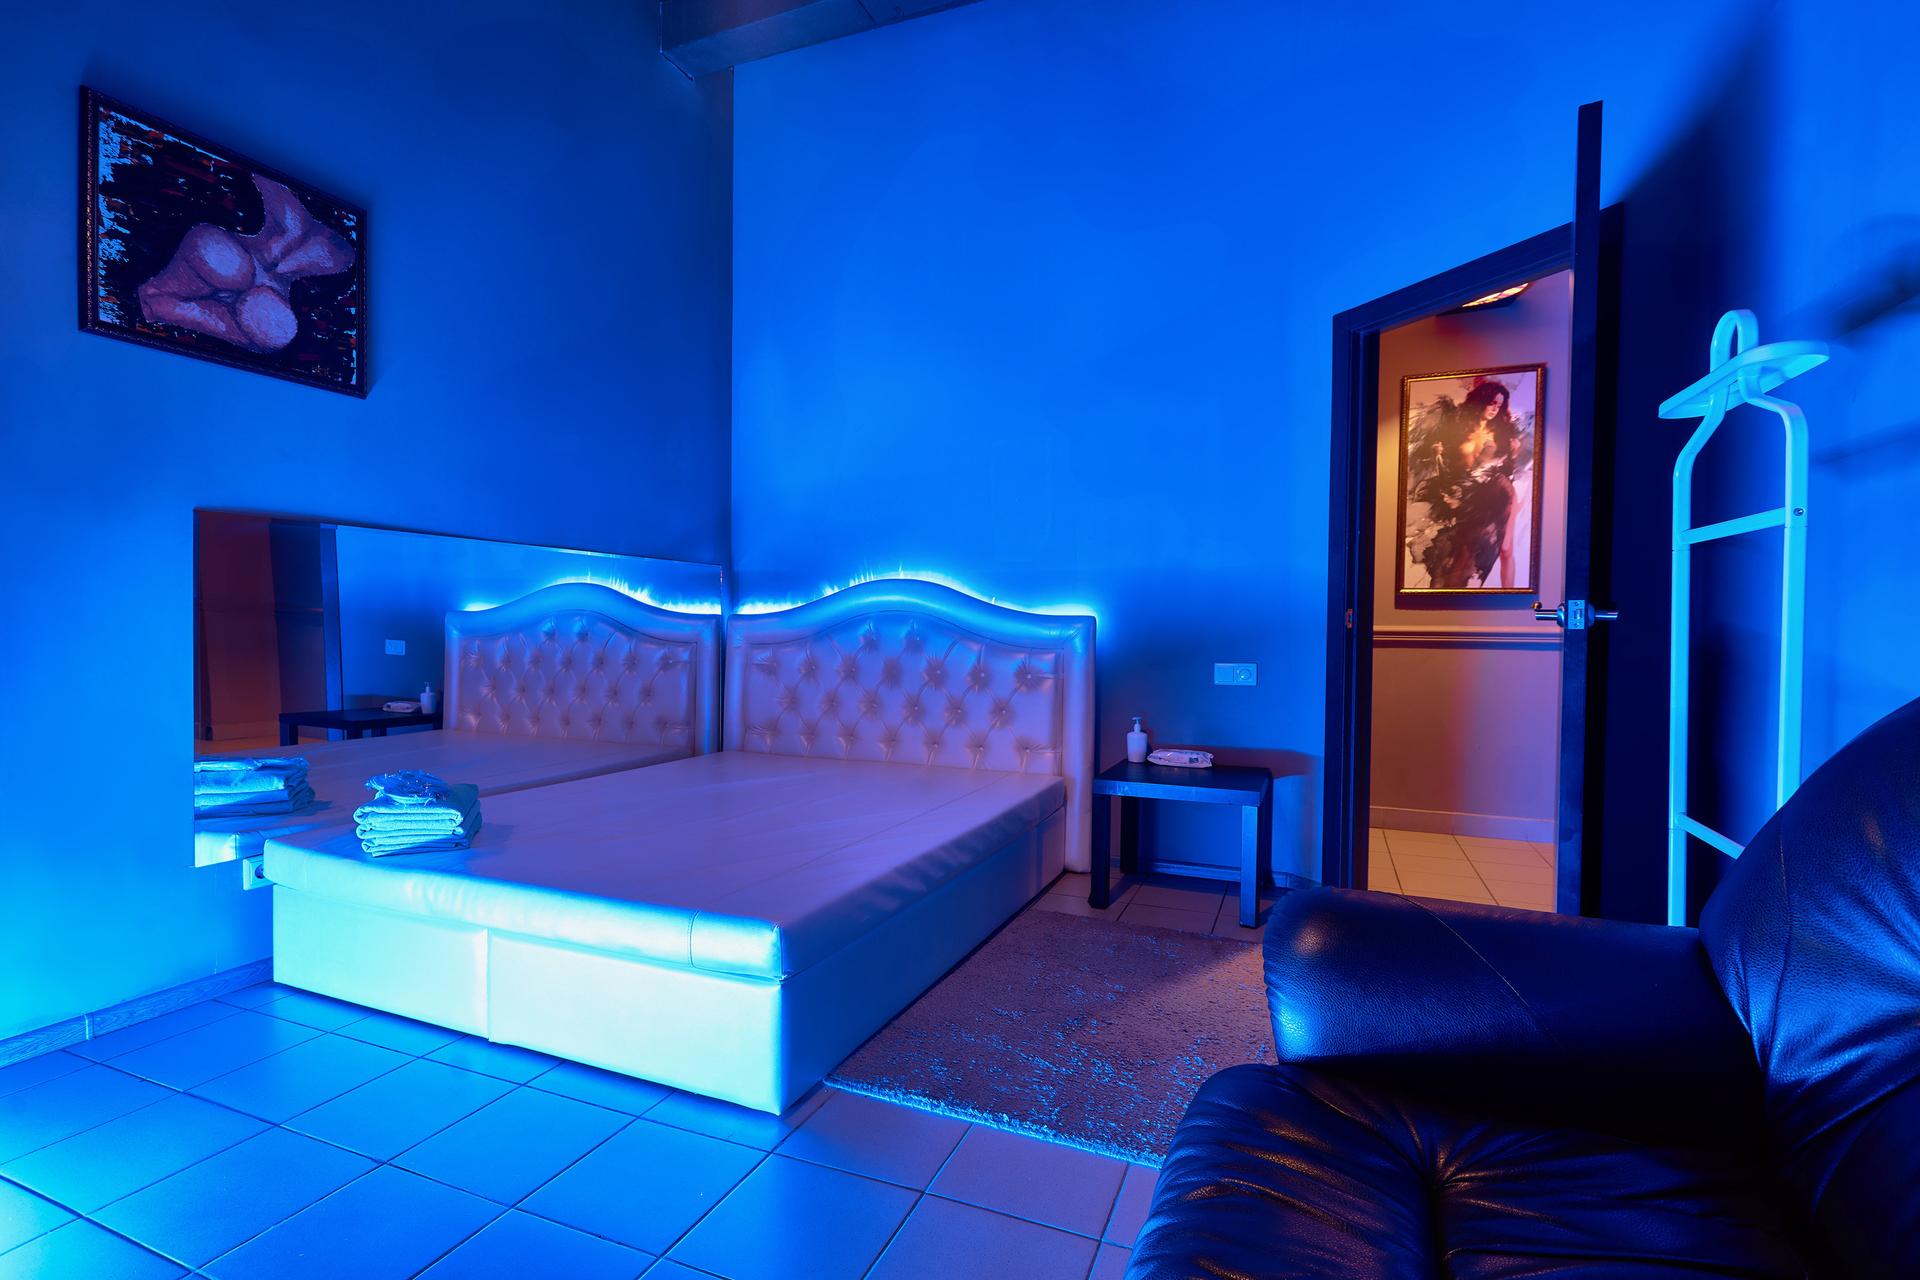 Массажный салон goldengirls24 ru. Массажный салон интерьер. Комната для эротического массажа. Синяя подсветка для комнаты. Спальня в эротическом стиле.